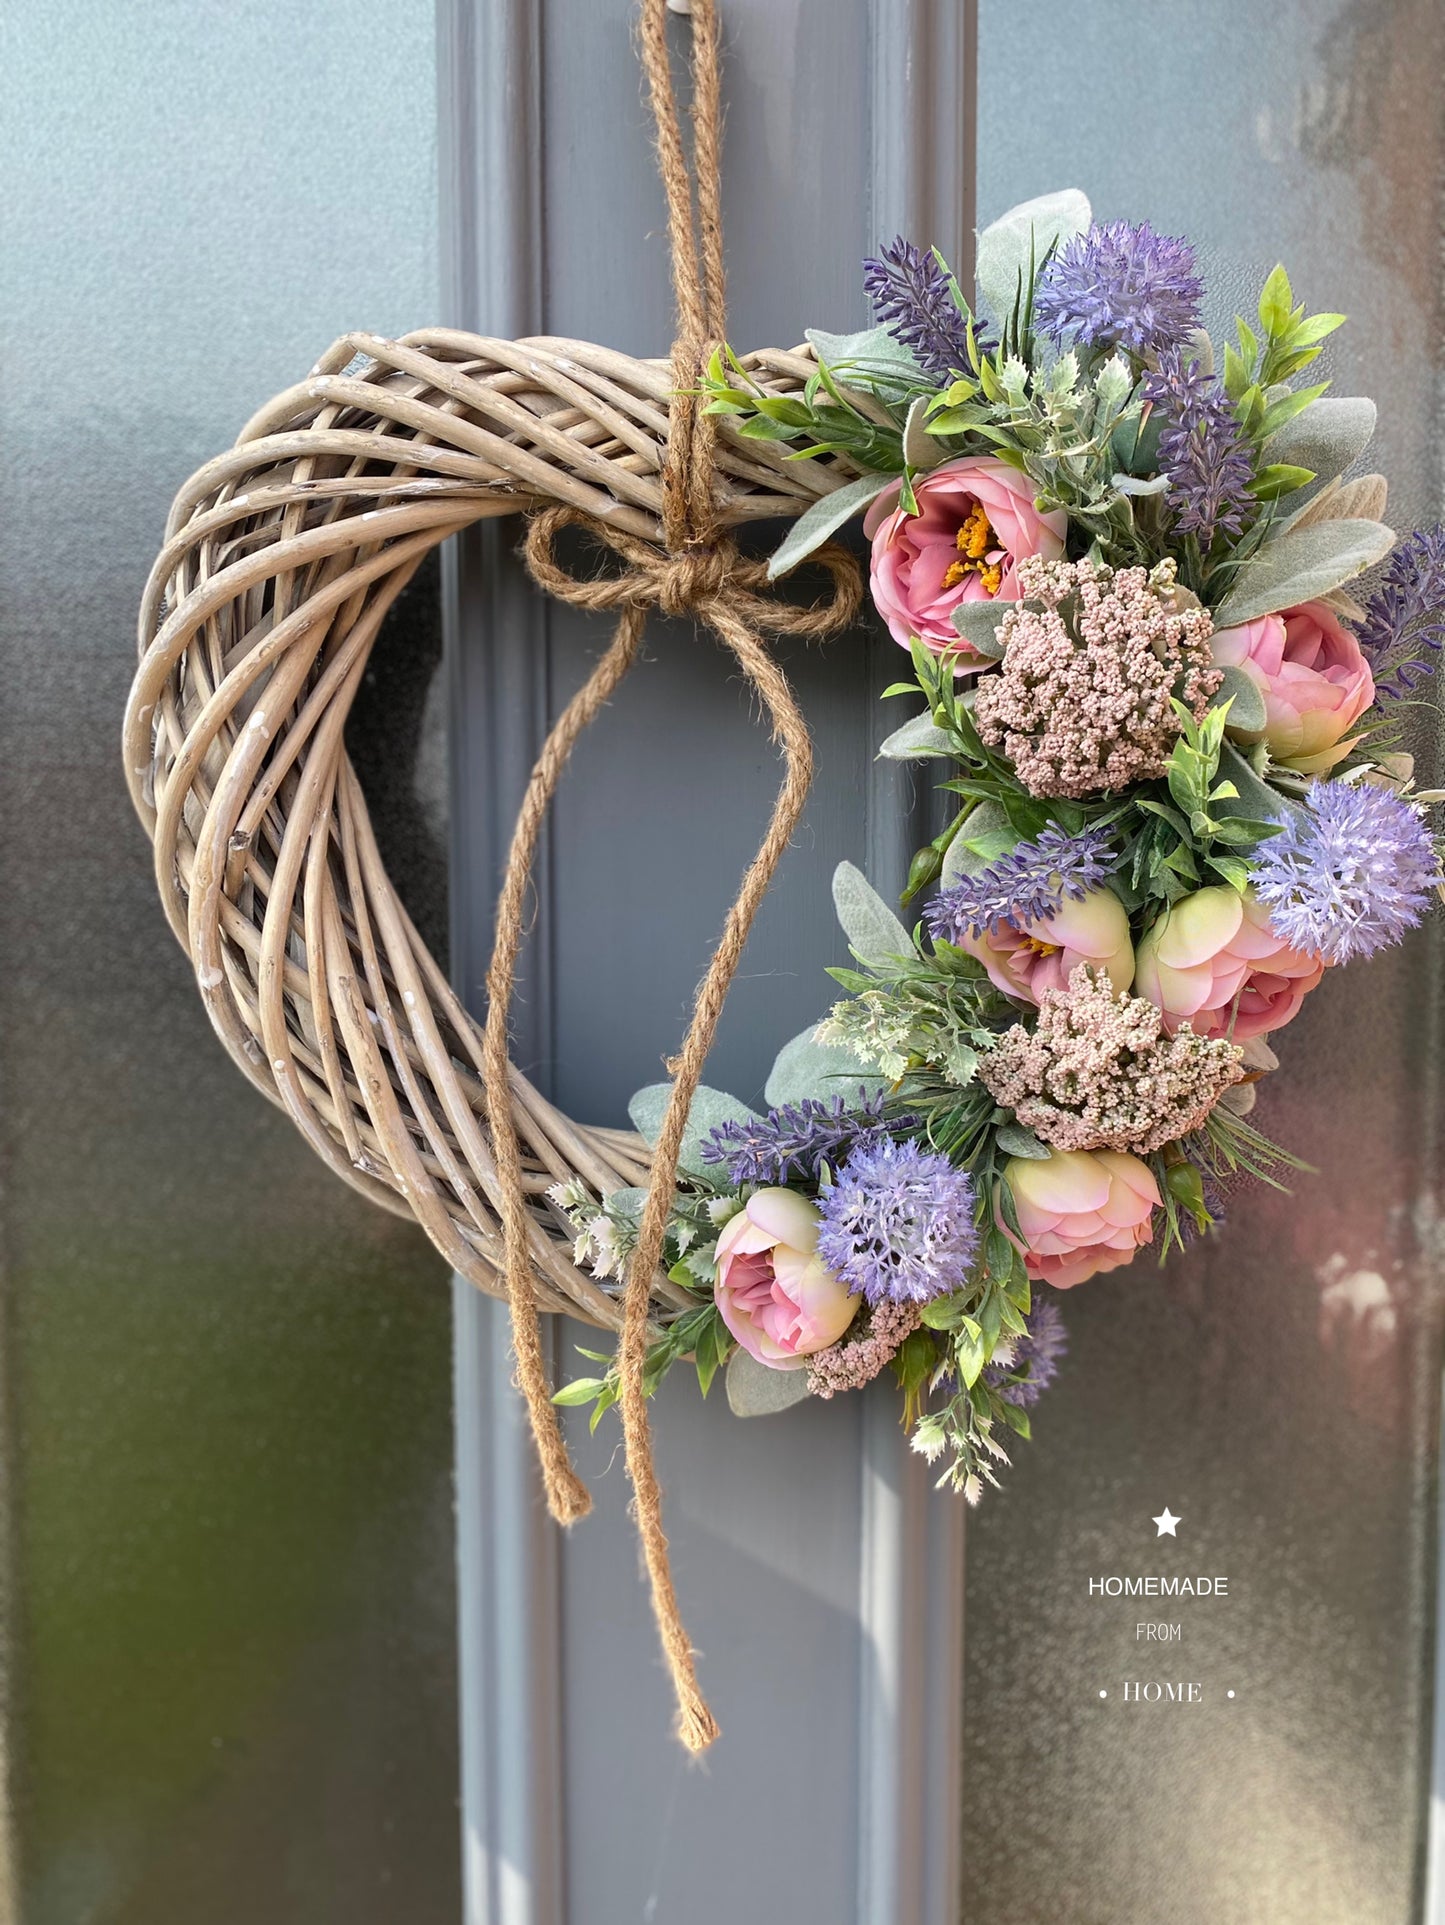 Tintagel rose & lavender wicker heart wreath